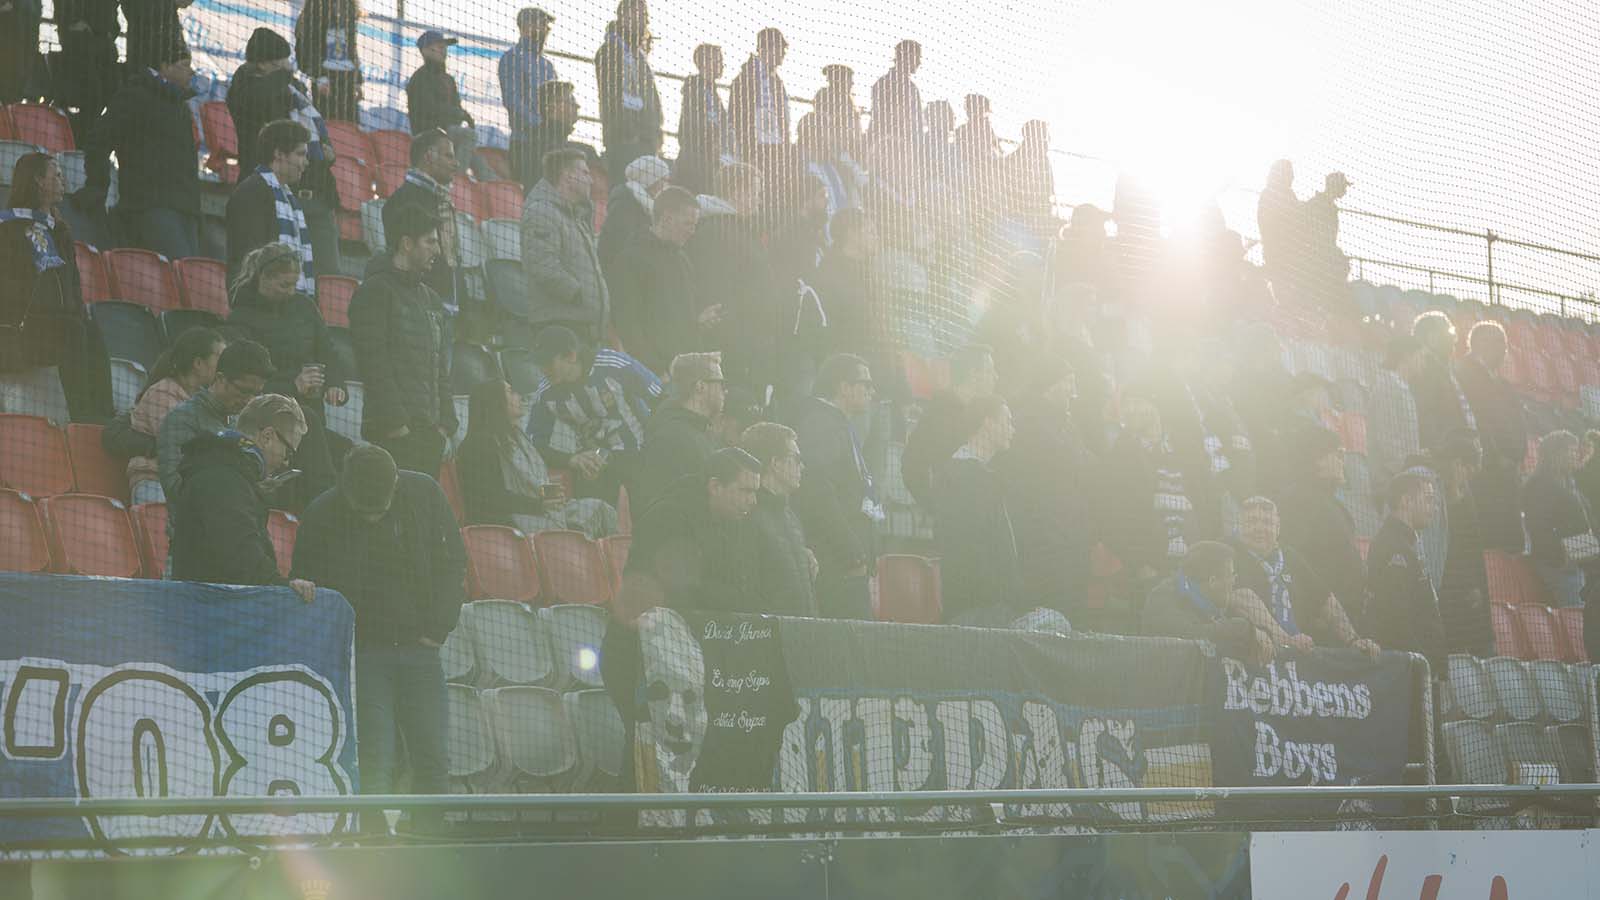 180415 IFK Göteborgs klack under fotbollsmatchen i Allsvenskan mellan Östersund och IFK Göteborg den 15 april 2018 i Östersund. Foto: Tobias Nykänen / BILDBYRÅN / kod TN/ Cop 171